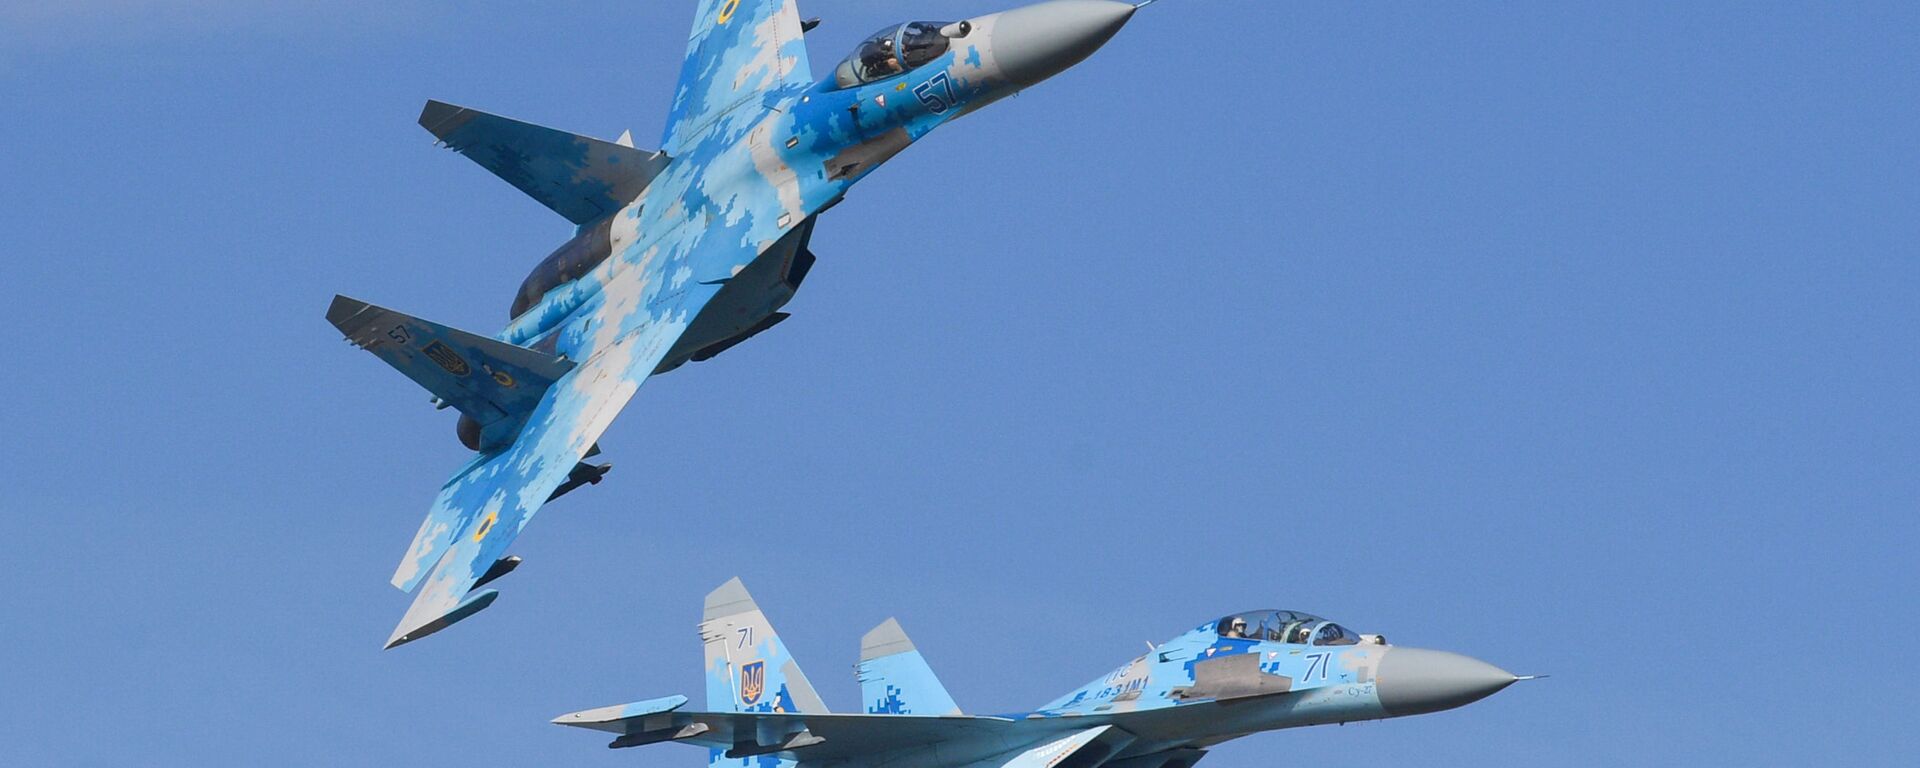 Истребители Су-27 ВВС Украины во время многонациональных учений «Чистое небо-2018» - Sputnik Latvija, 1920, 25.01.2021